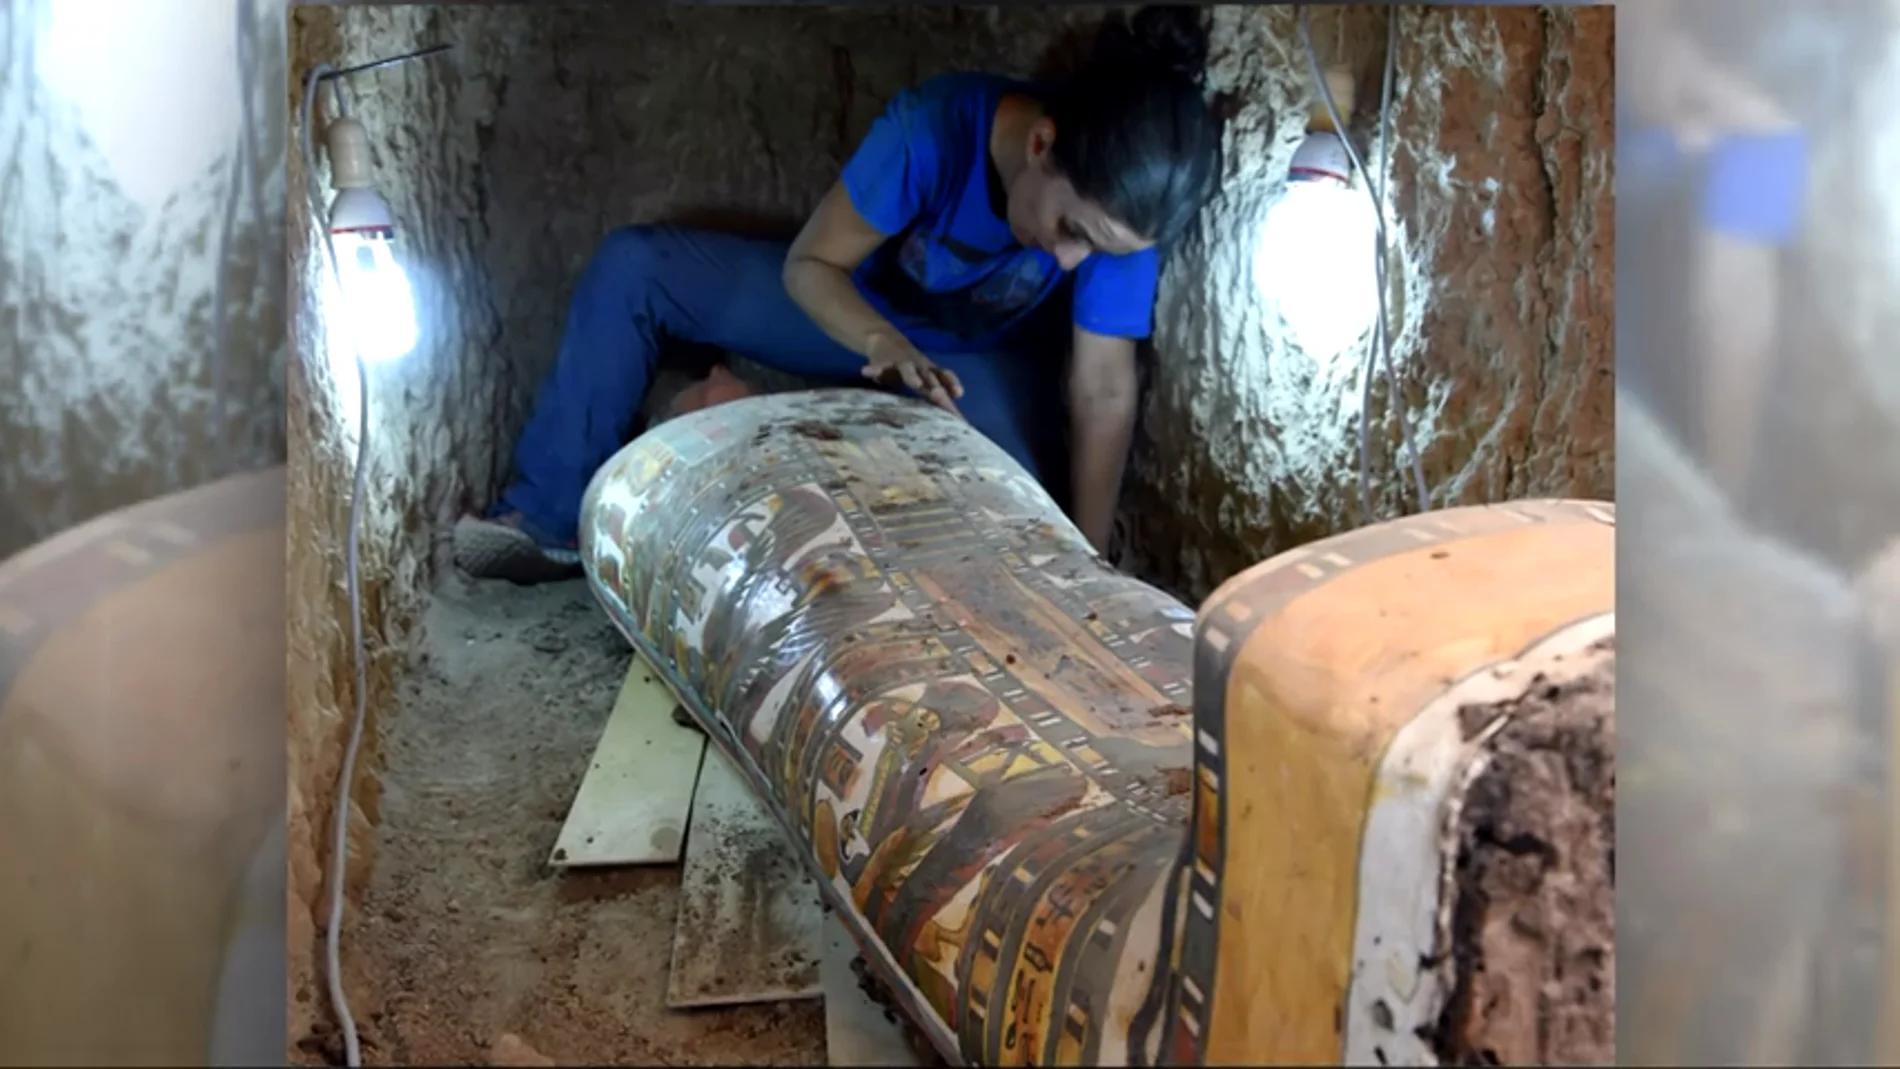 Frame 19.310829 de: Un equipo de arqueólogos españoles encuentra una momia de 3.000 años de antigüedad